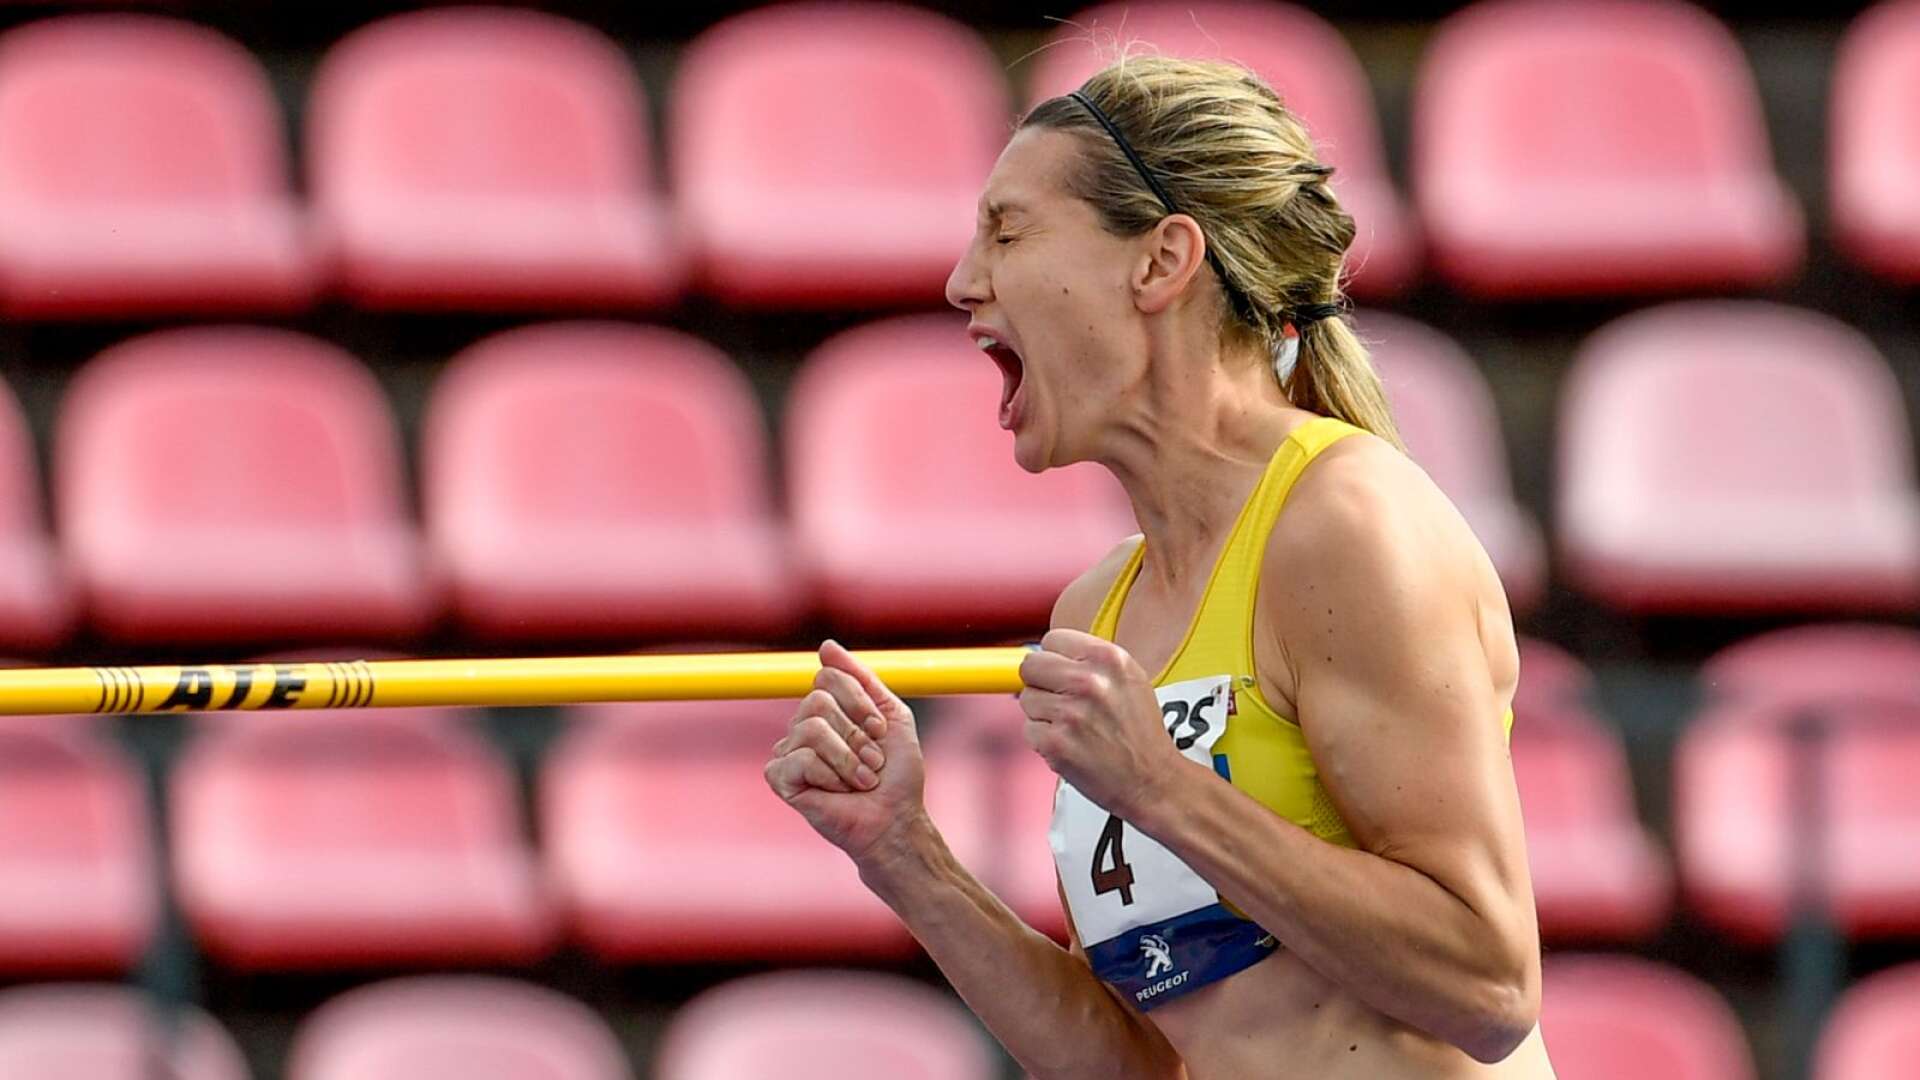 Sofie Skoog skriker ut sin glädje över att ha tagit 1,90 meter.